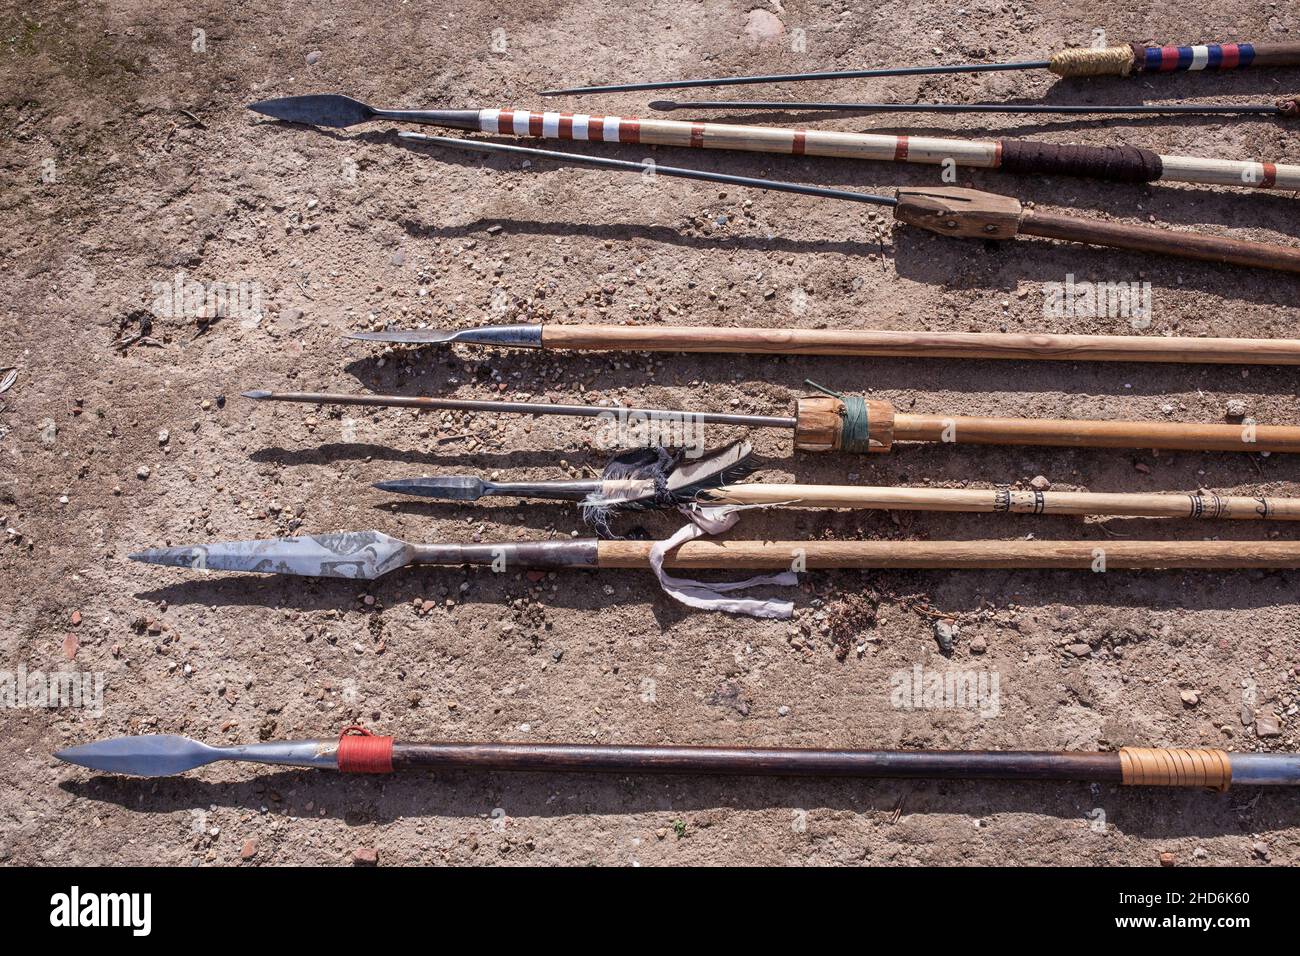 Diferentes tipos de lanzas y jabalinas de la antigüedad. Réplicas de armas pre-romanas y antiguas de la península ibérica romana. Foto de stock